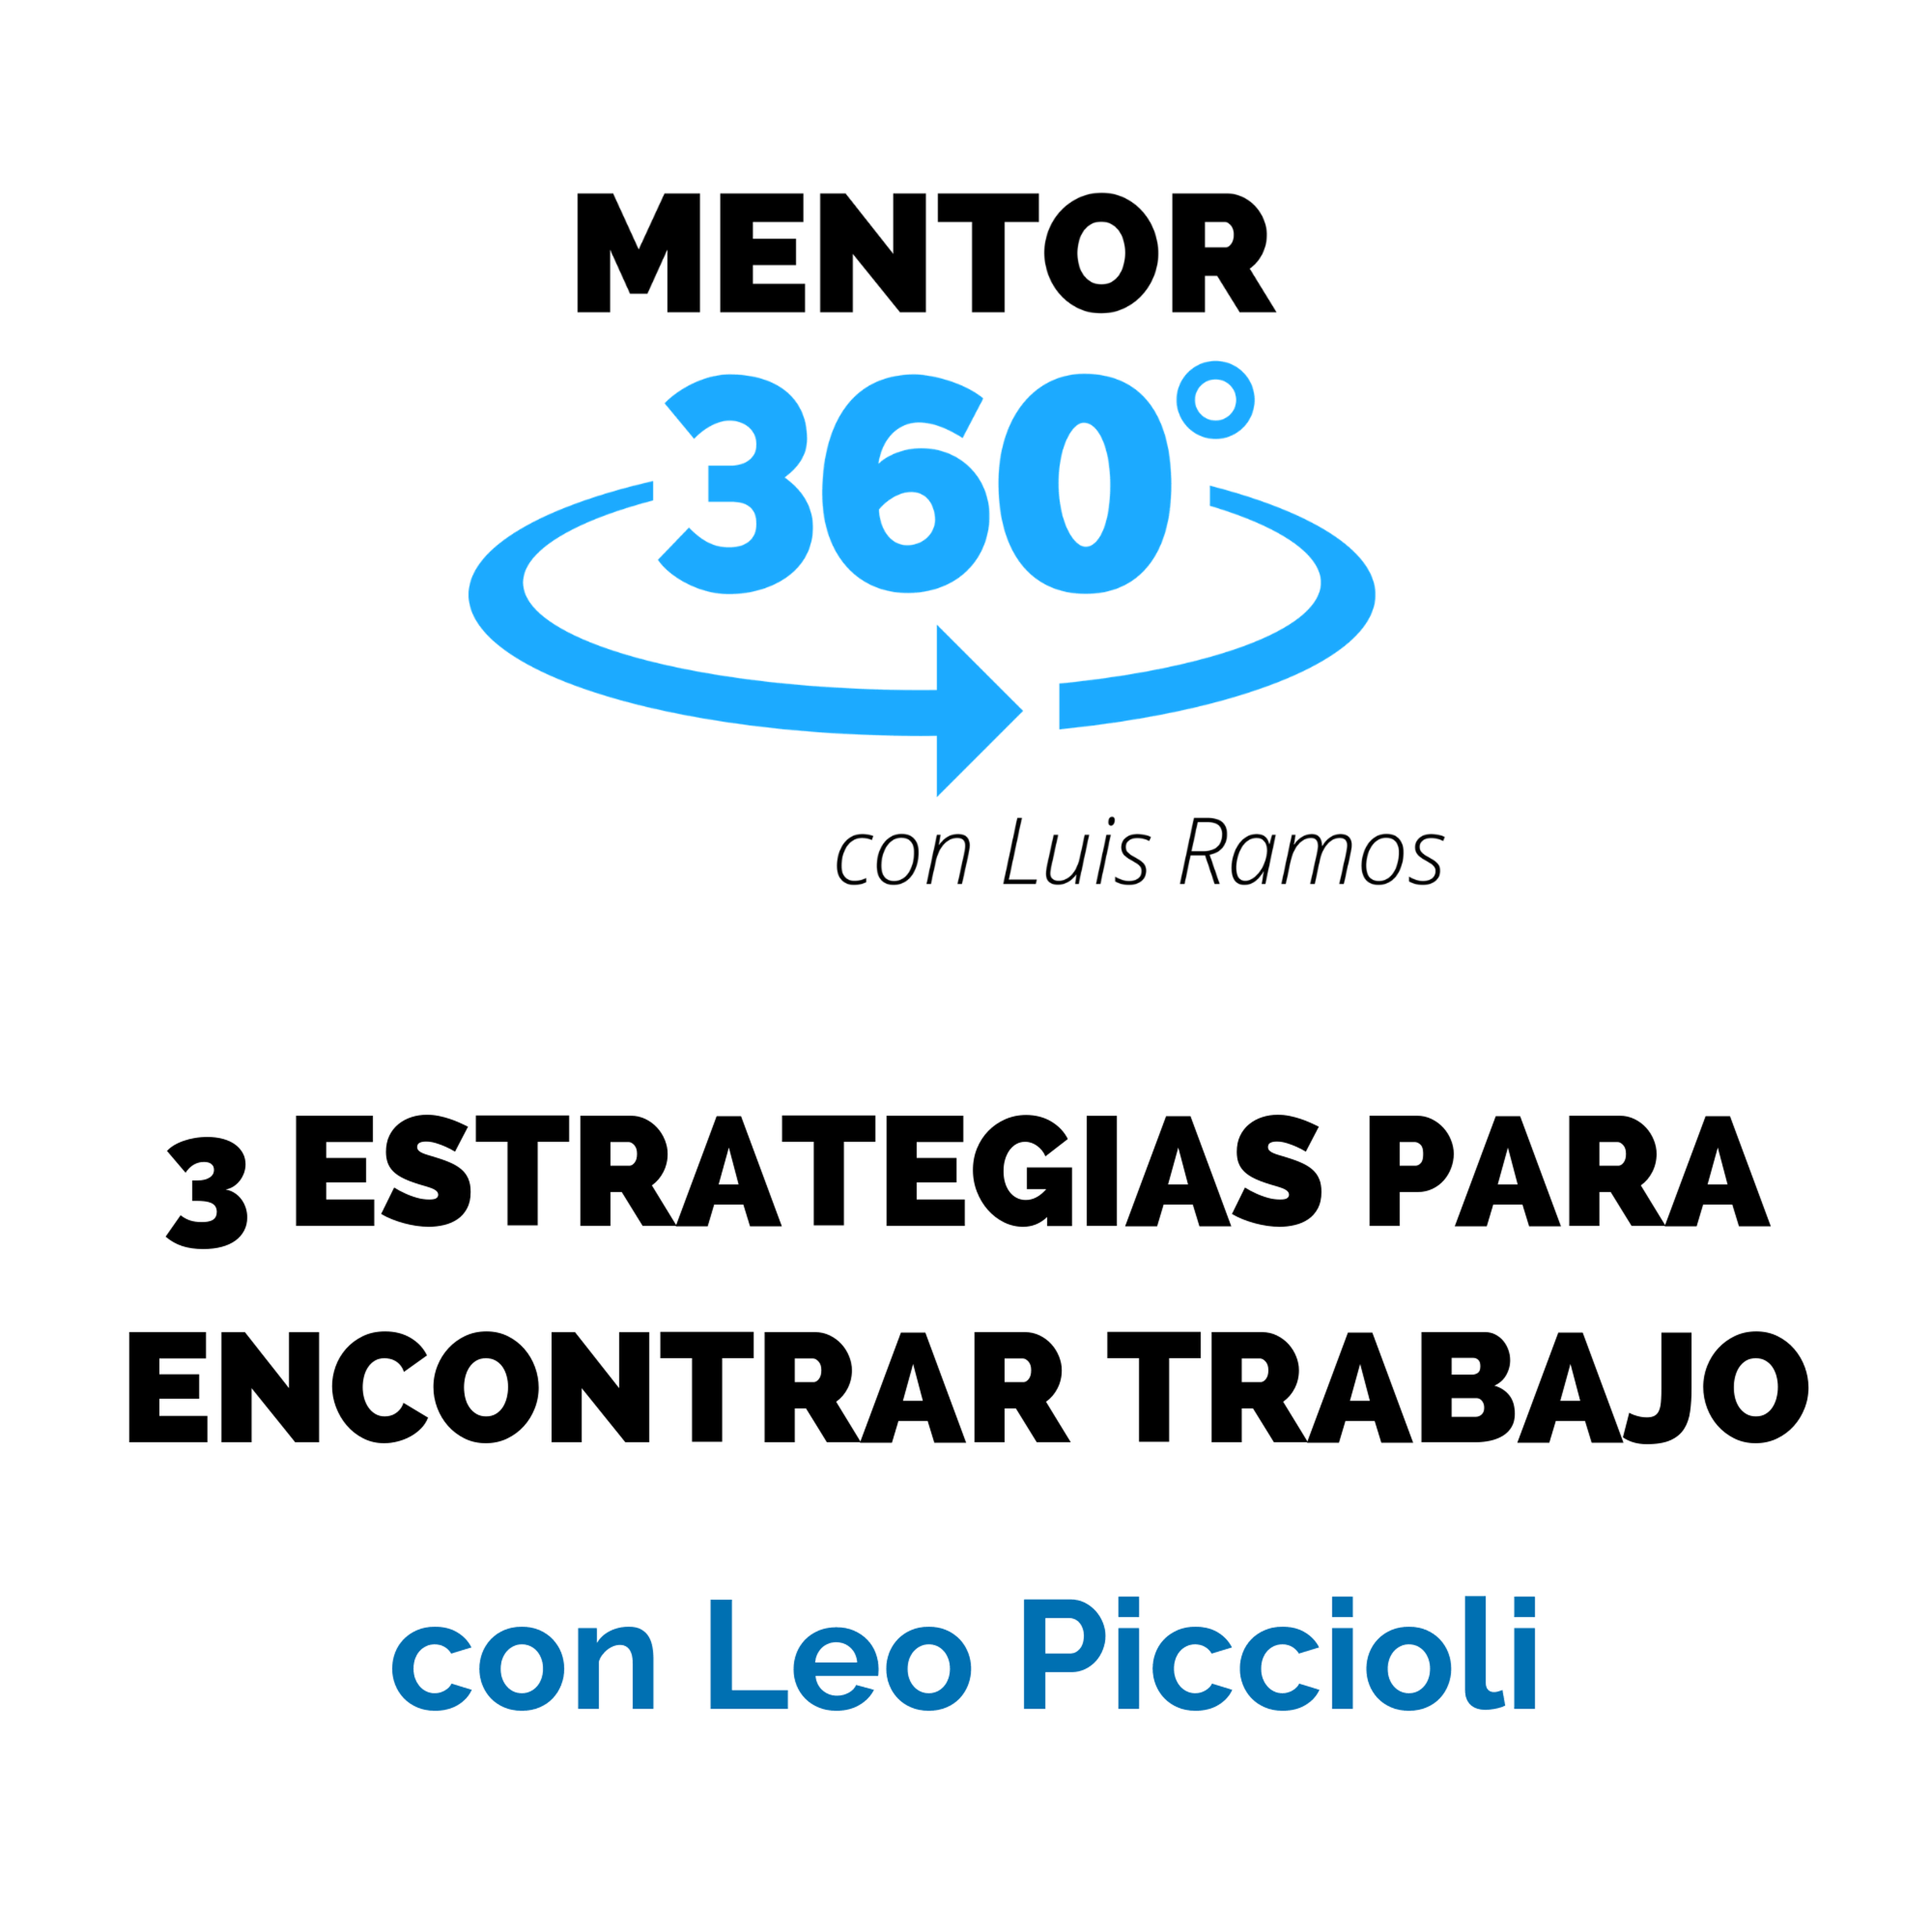 3 Estrategias para Encontrar Trabajo, con Leo Piccioli - Liderazgo - MENTOR360